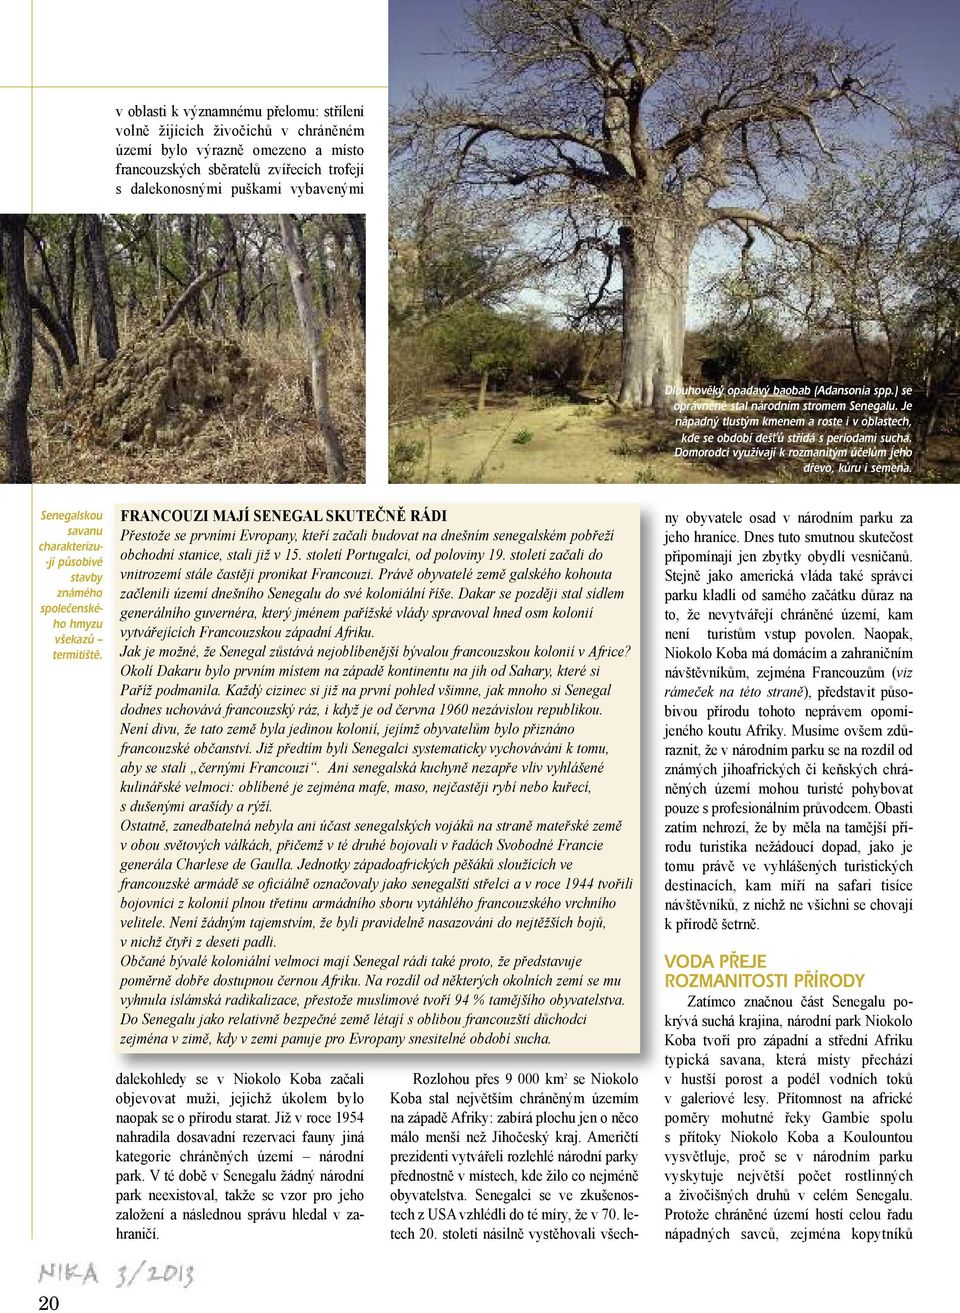 Domorodci využívají k rozmanitým účelům jeho dřevo, kůru i semena. Senegalskou savanu charakterizu- -jí působivé stavby známého společenského hmyzu všekazů termitiště.